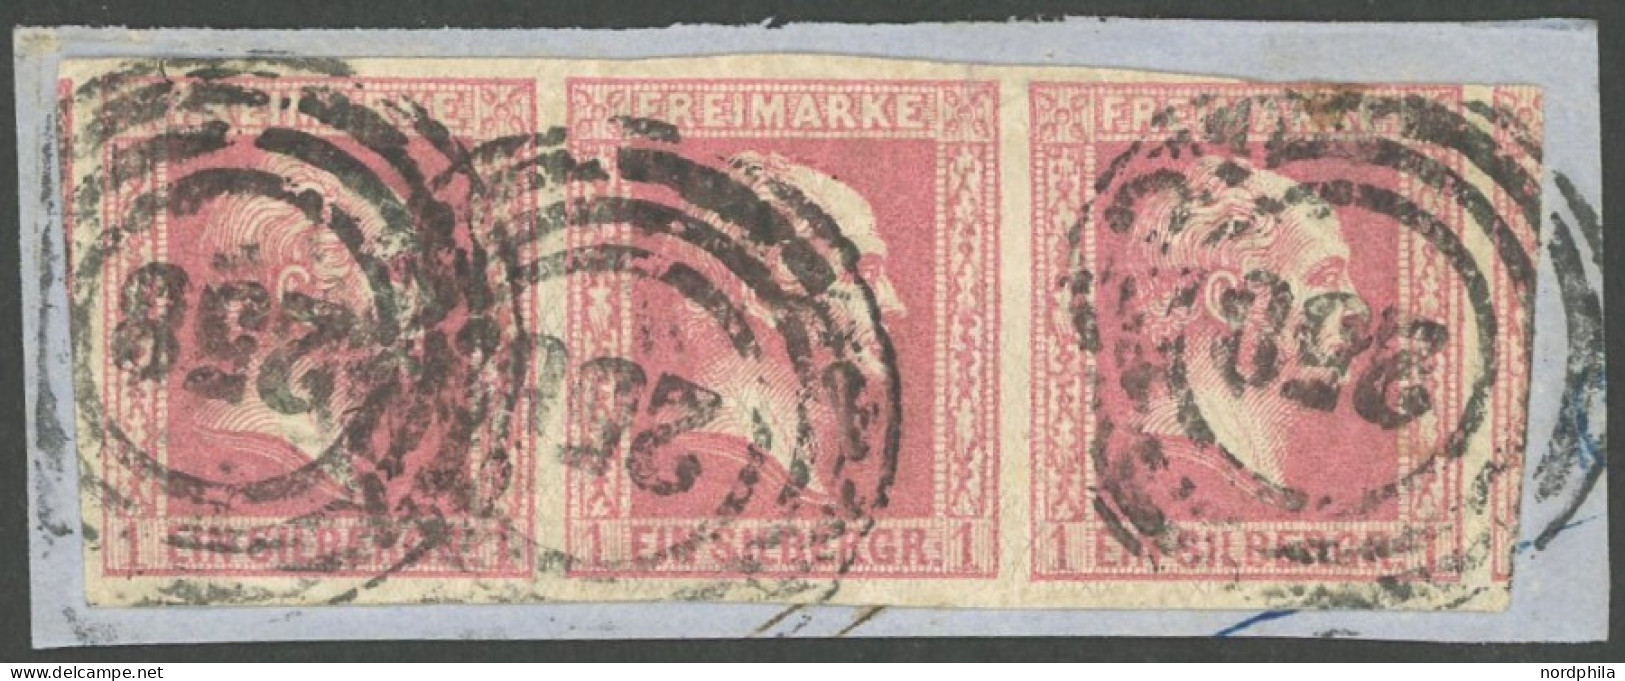 PREUSSEN 6a BrfStk, 1857, 1 Sgr. Rosa Im Waagerechten Dreierstreifen Auf Briefstück, Linke Marke Oben Berührt Sonst Brei - Gebraucht